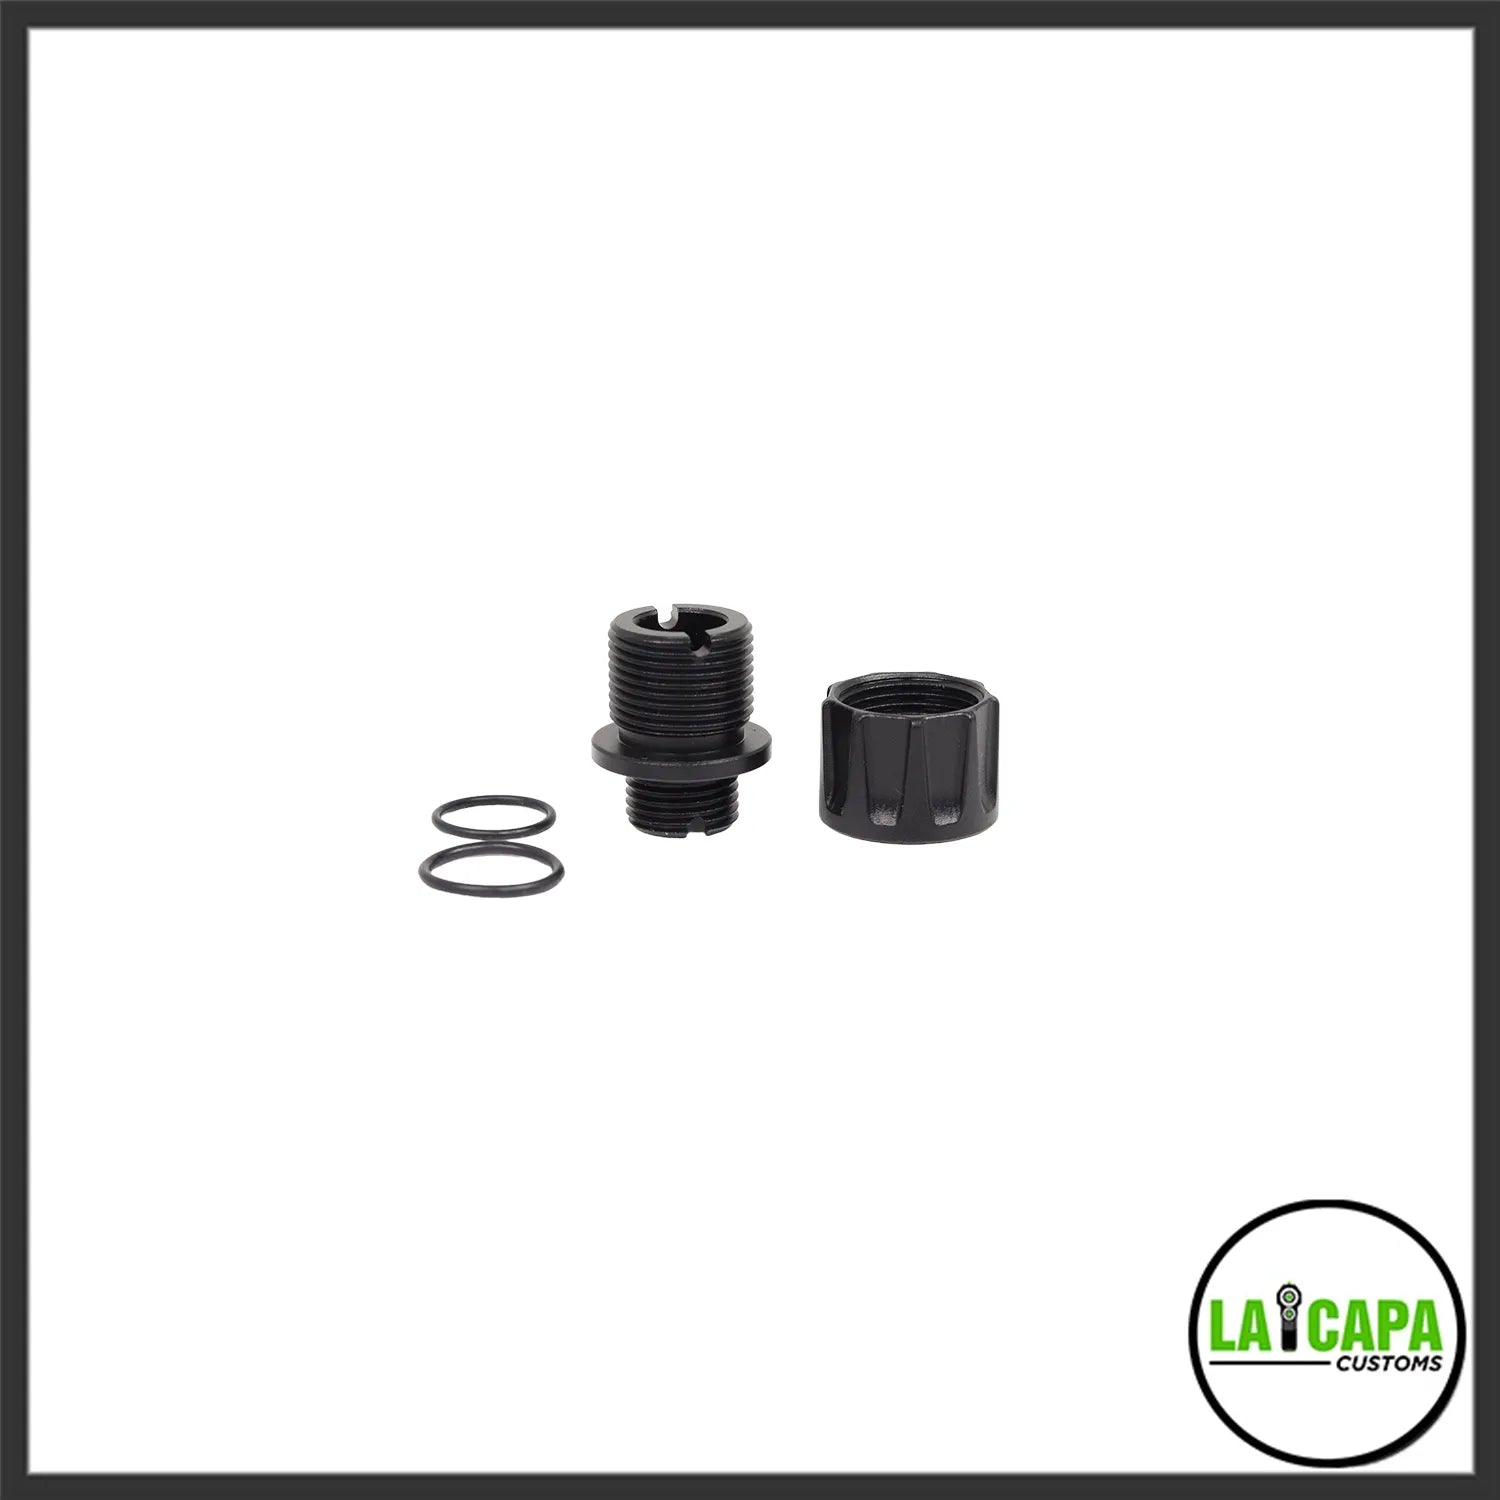 LA Capa Customs “S1” Reversible Thread Adapter for Hi Capa - Black